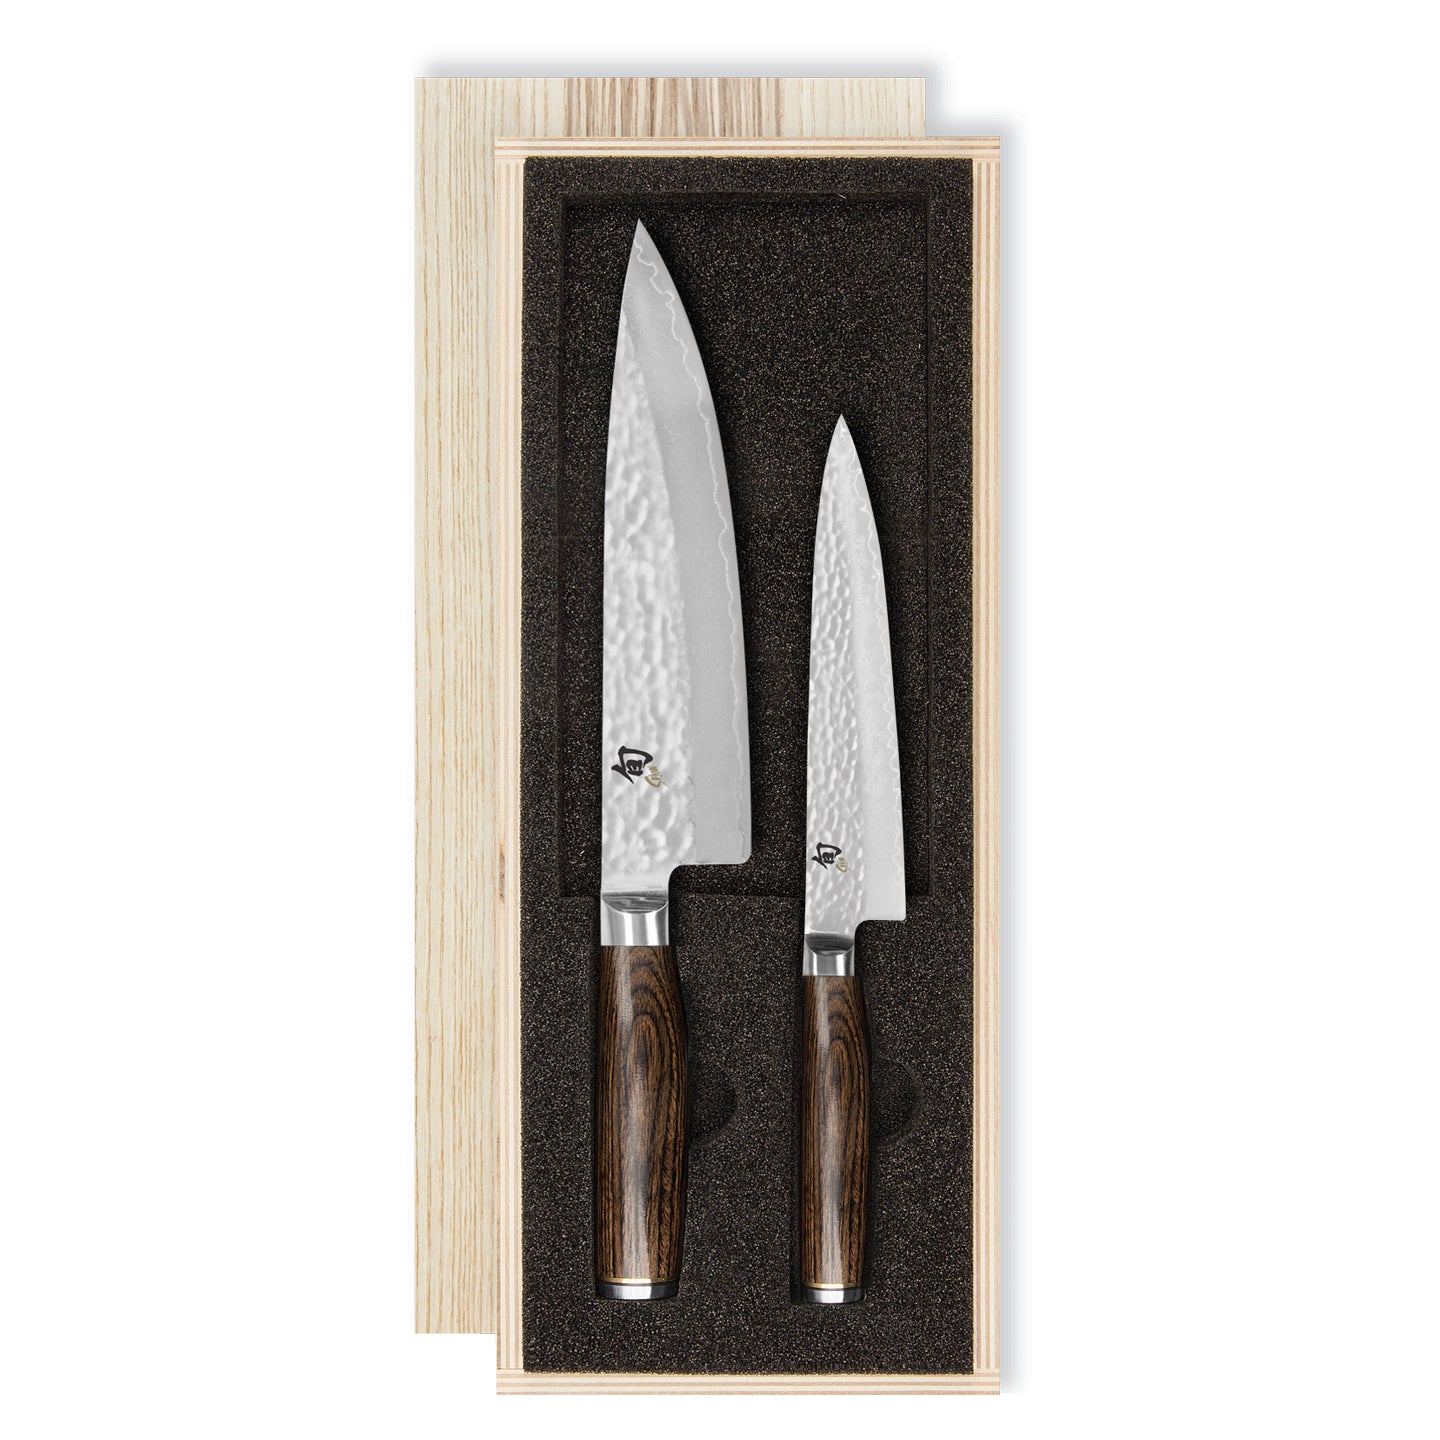 Kai Shun Premier Chef Utility Knife